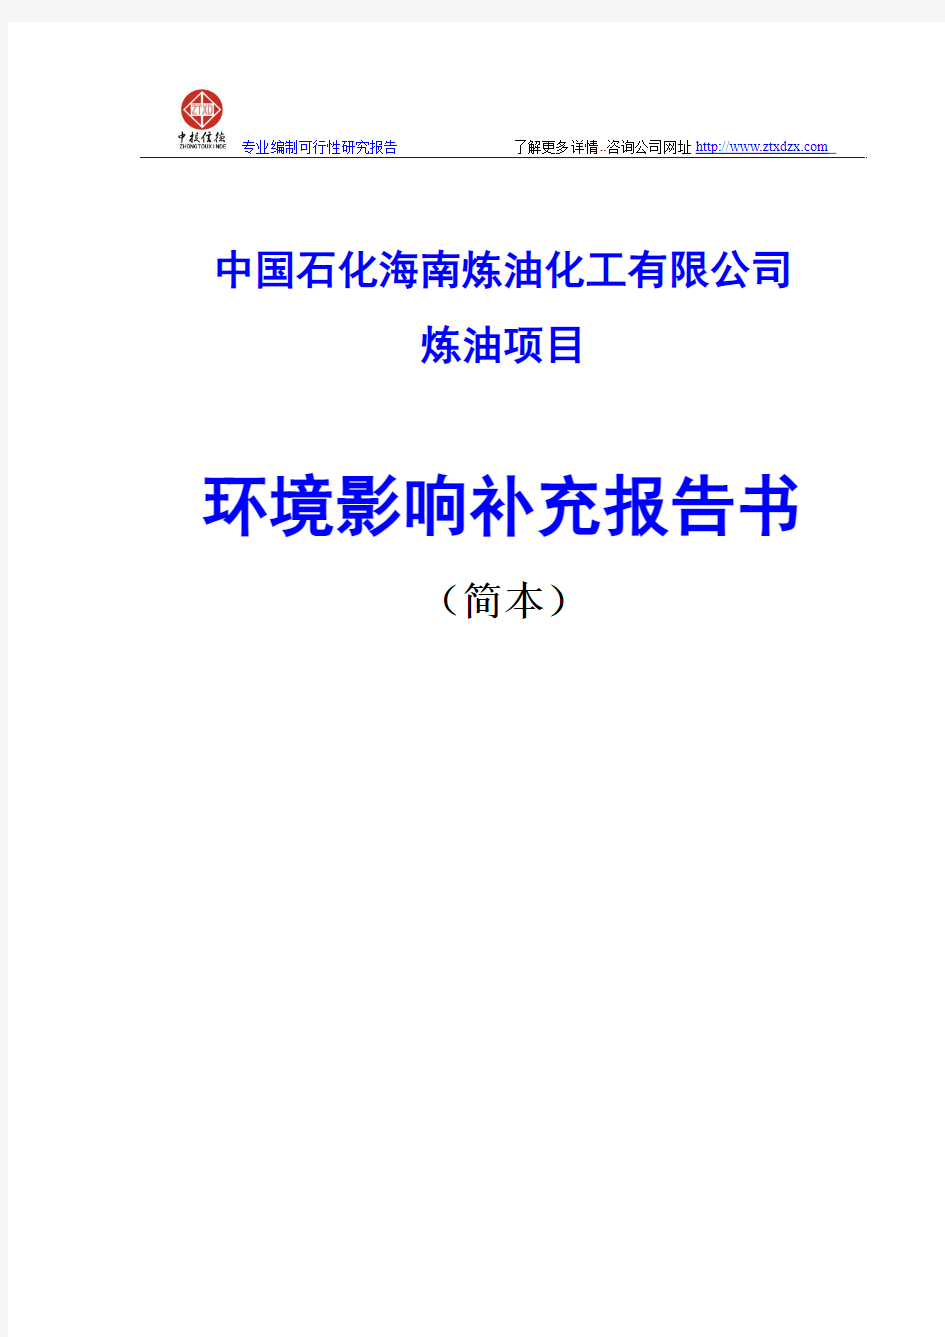 中国石化海南炼油化工有限公司炼油项目环境影响补充报告书